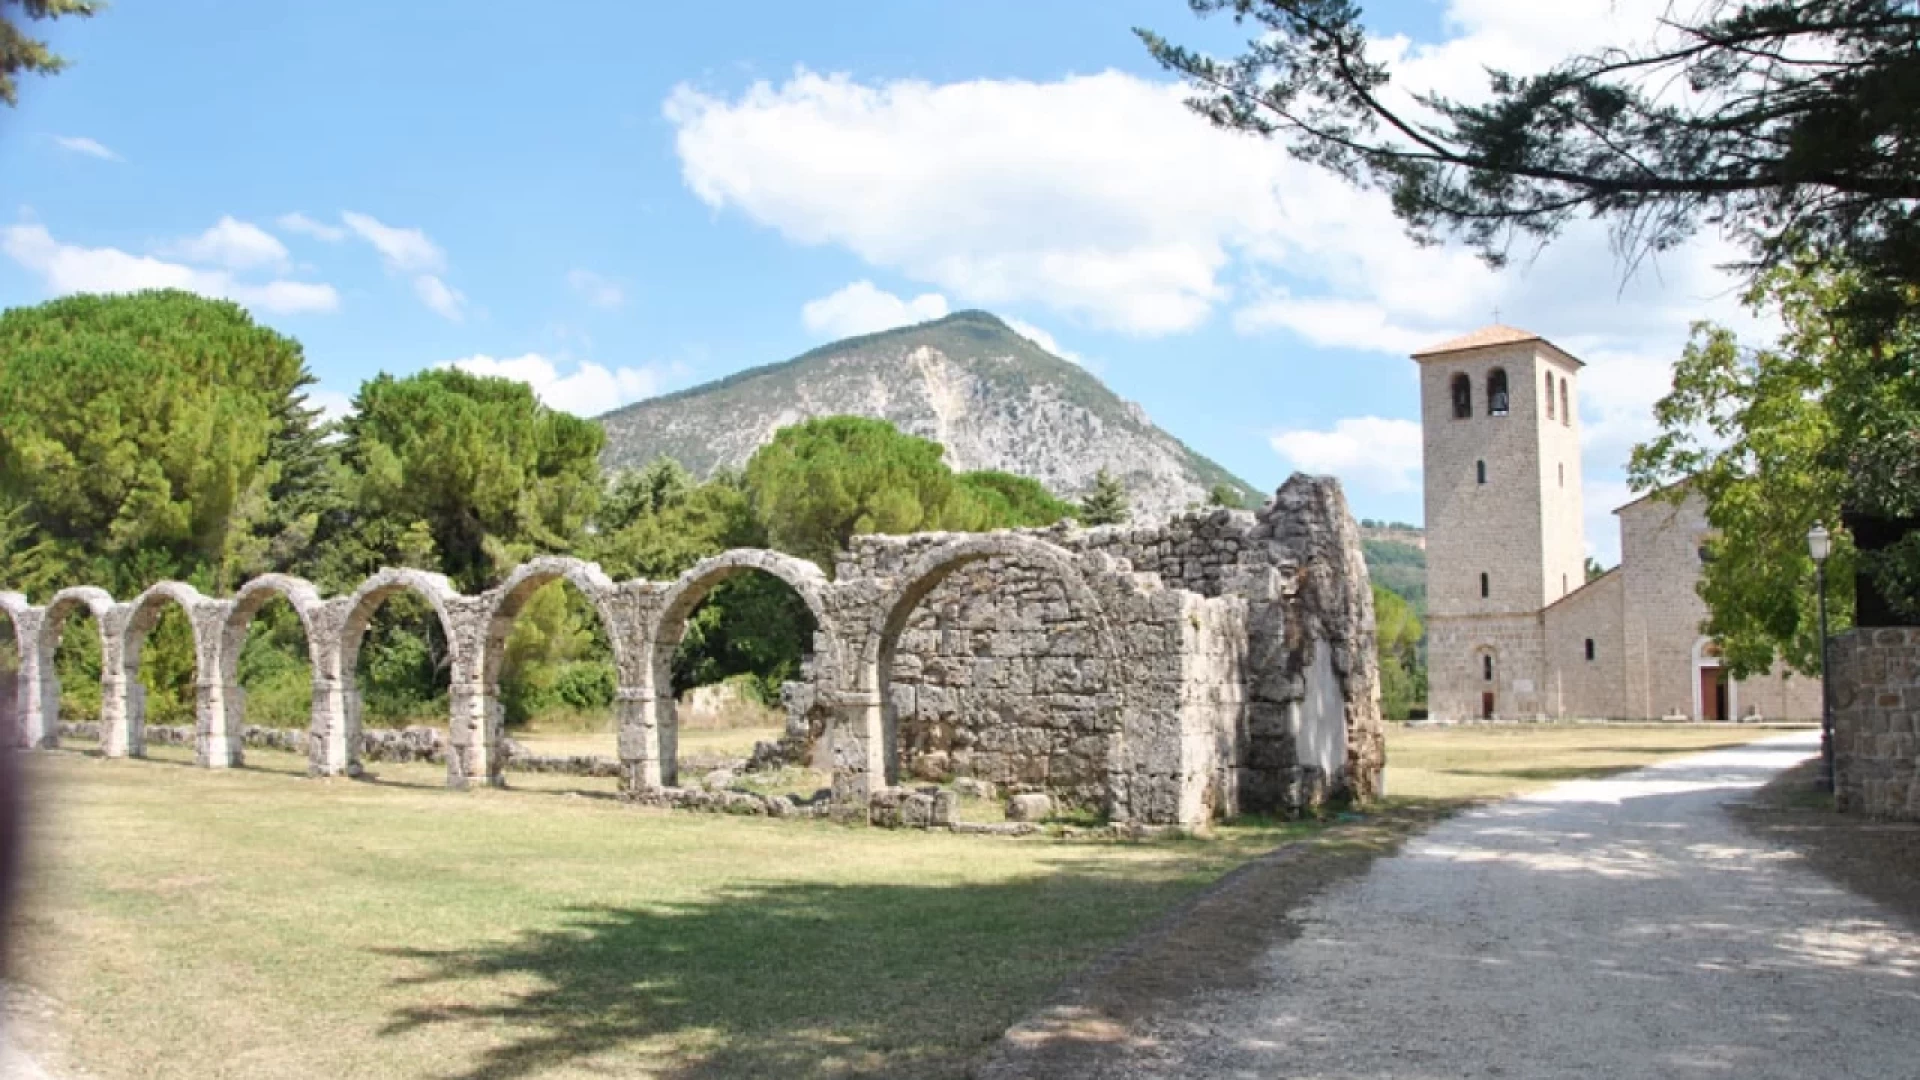 Il Complesso Monumentale di San Vincenzo al Volturno selezionato per la candidatura al Marchio del Patrimonio Europeo anno 2023.